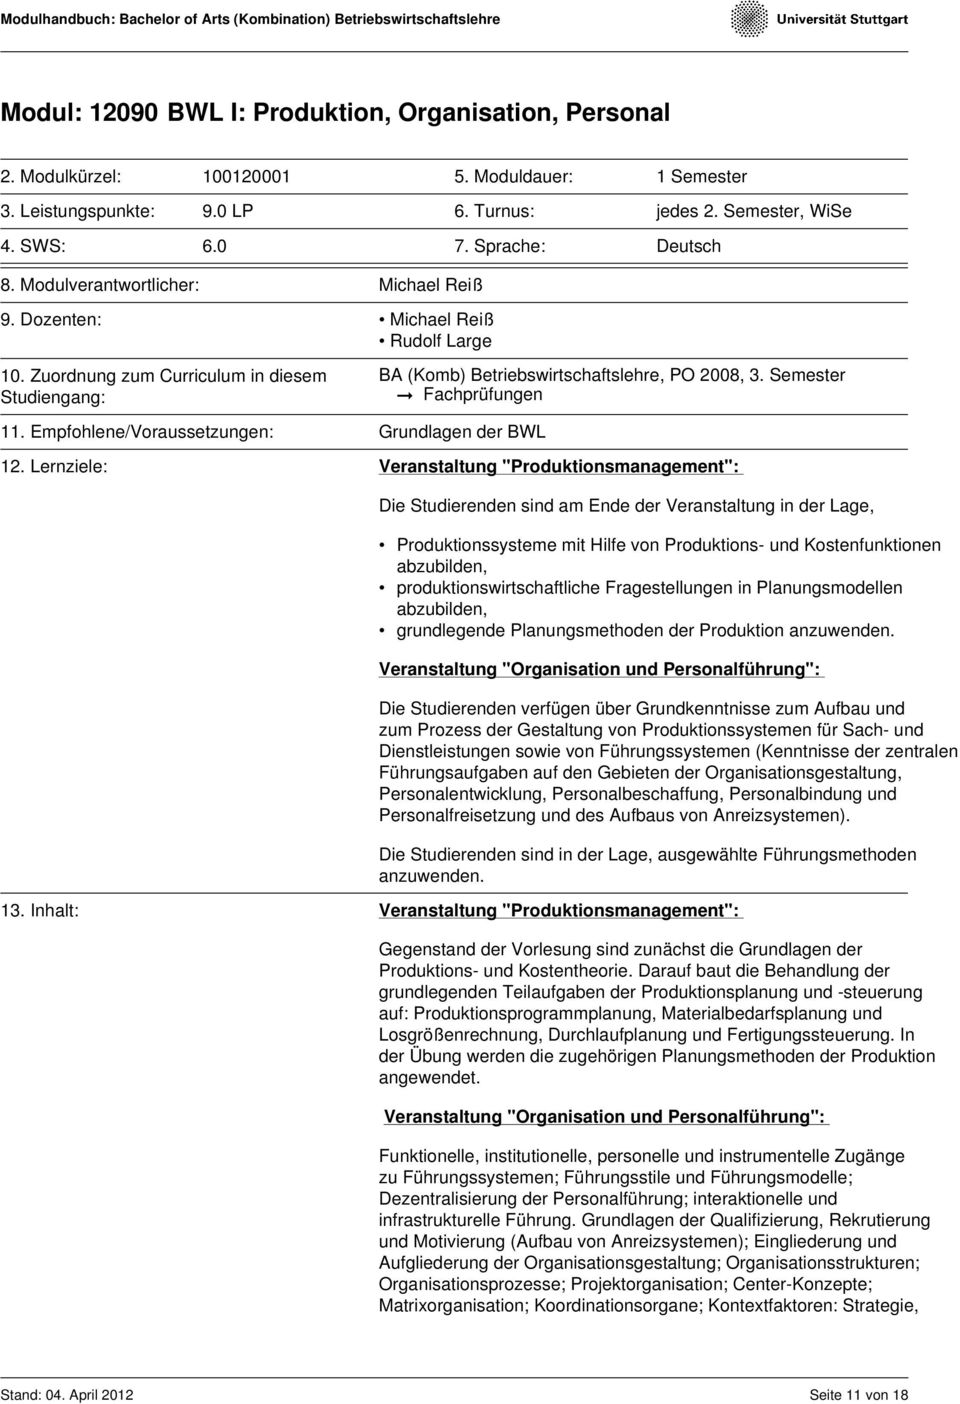 Semester Fachprüfungen 11. Empfohlene/Voraussetzungen: Grundlagen der BWL 12.